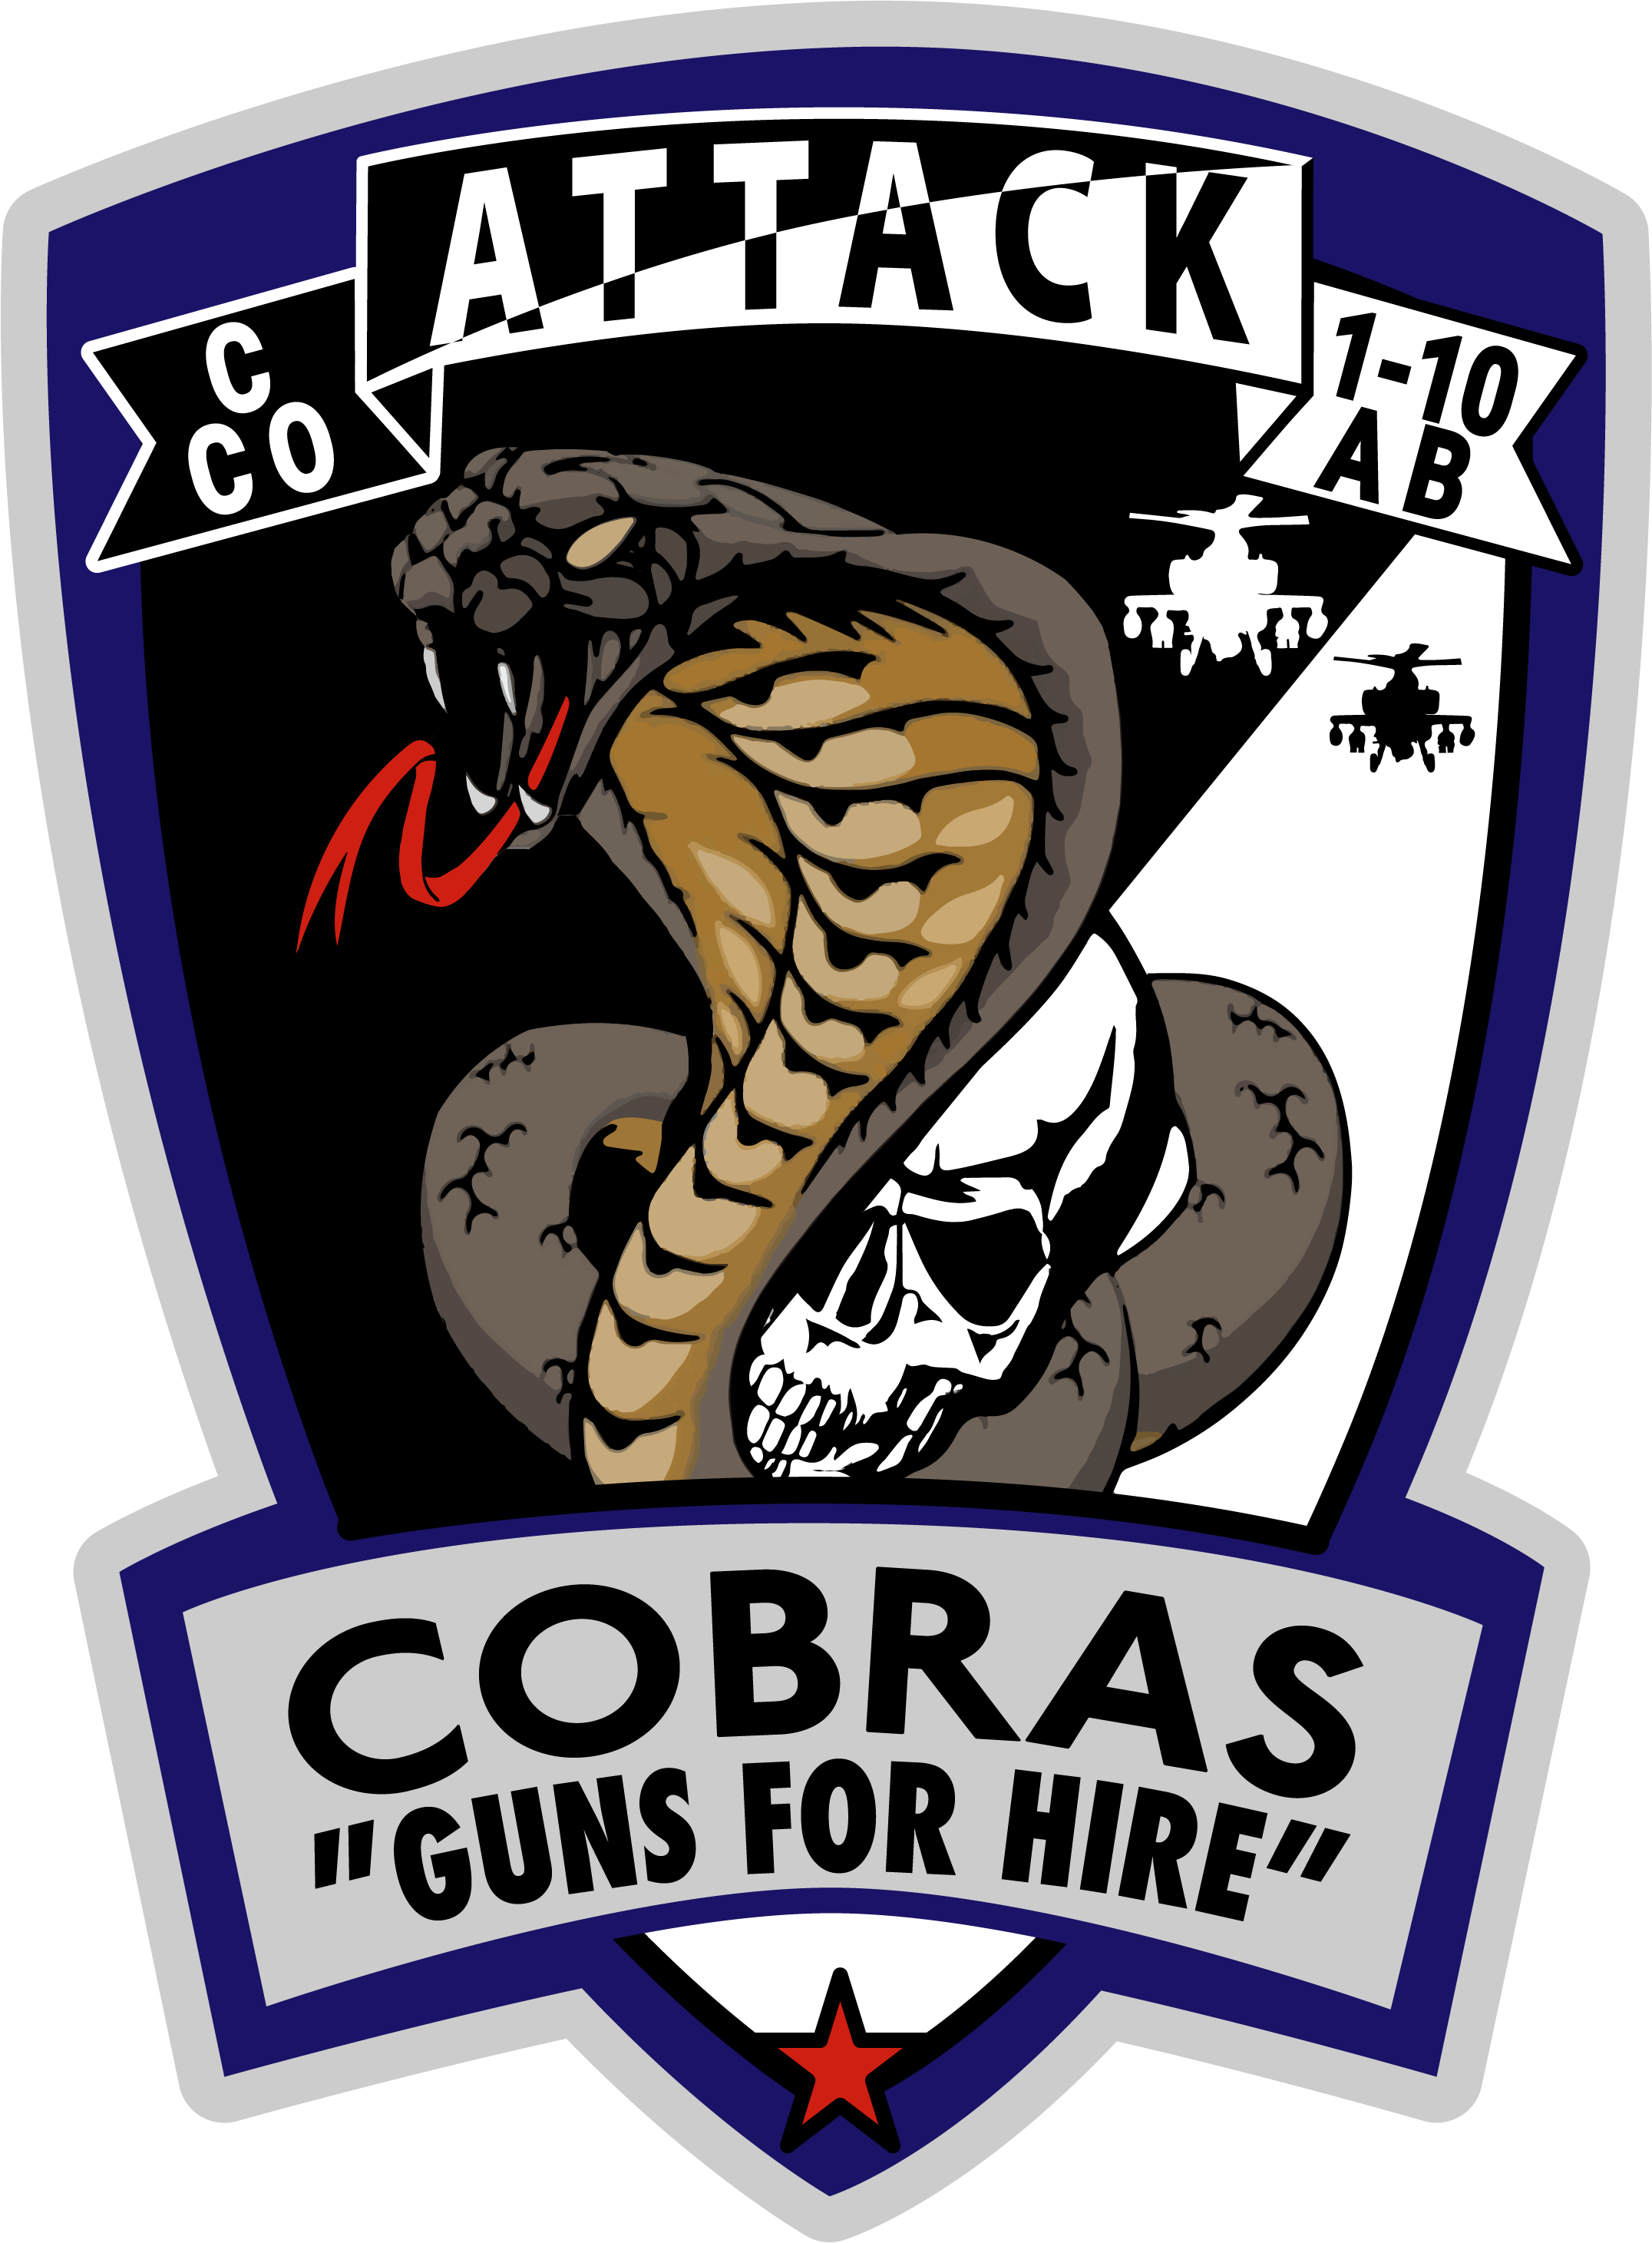 C Co, 1-10 AB "Cobras"